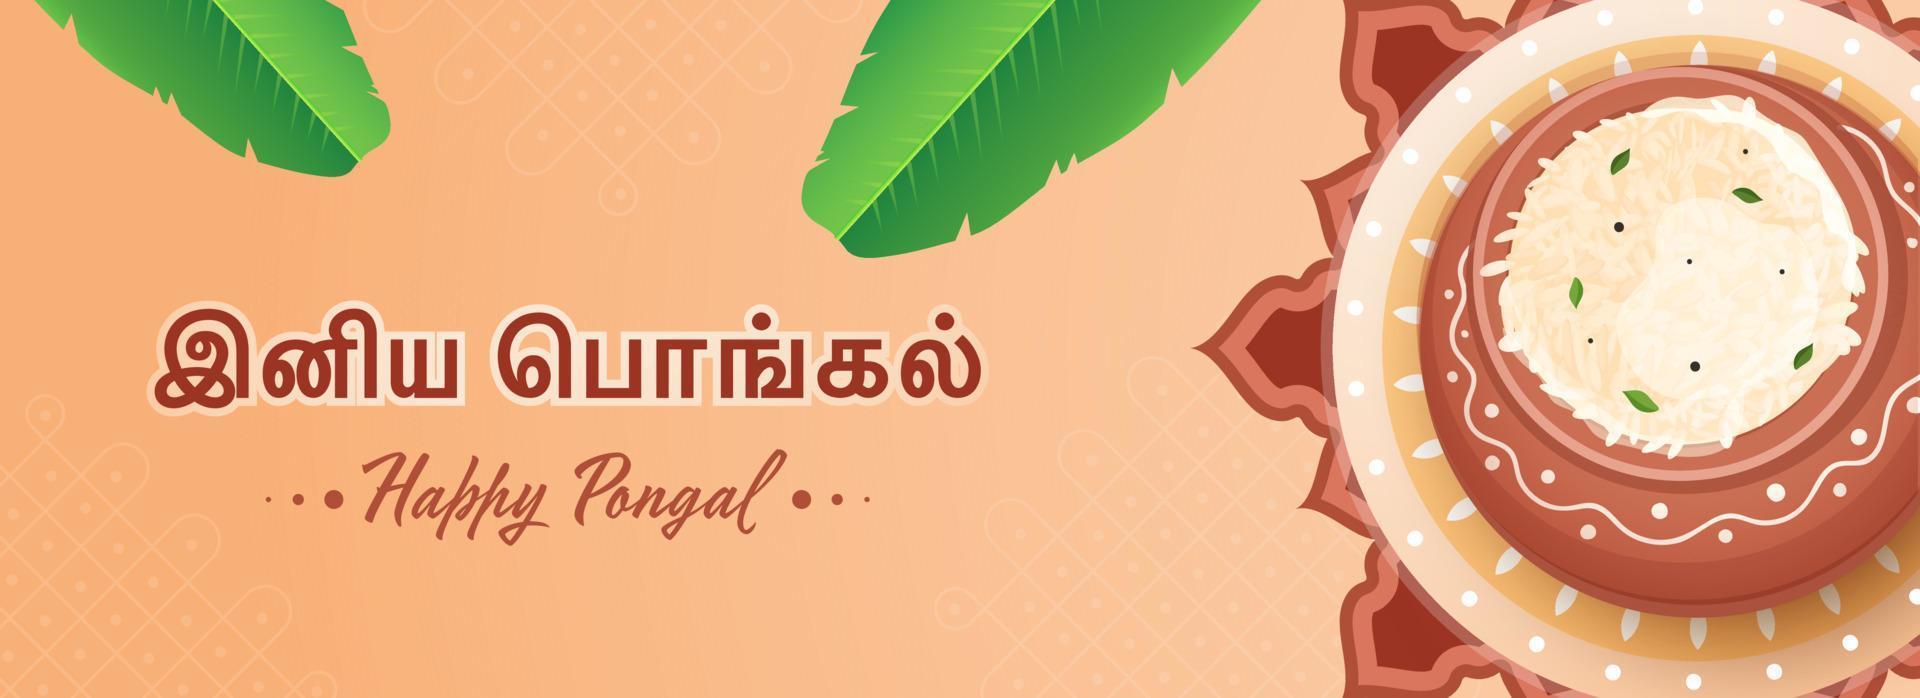 tamil idioma de contento pongal texto con parte superior ver arroz barro maceta, plátano hojas en pastel naranja antecedentes. vector